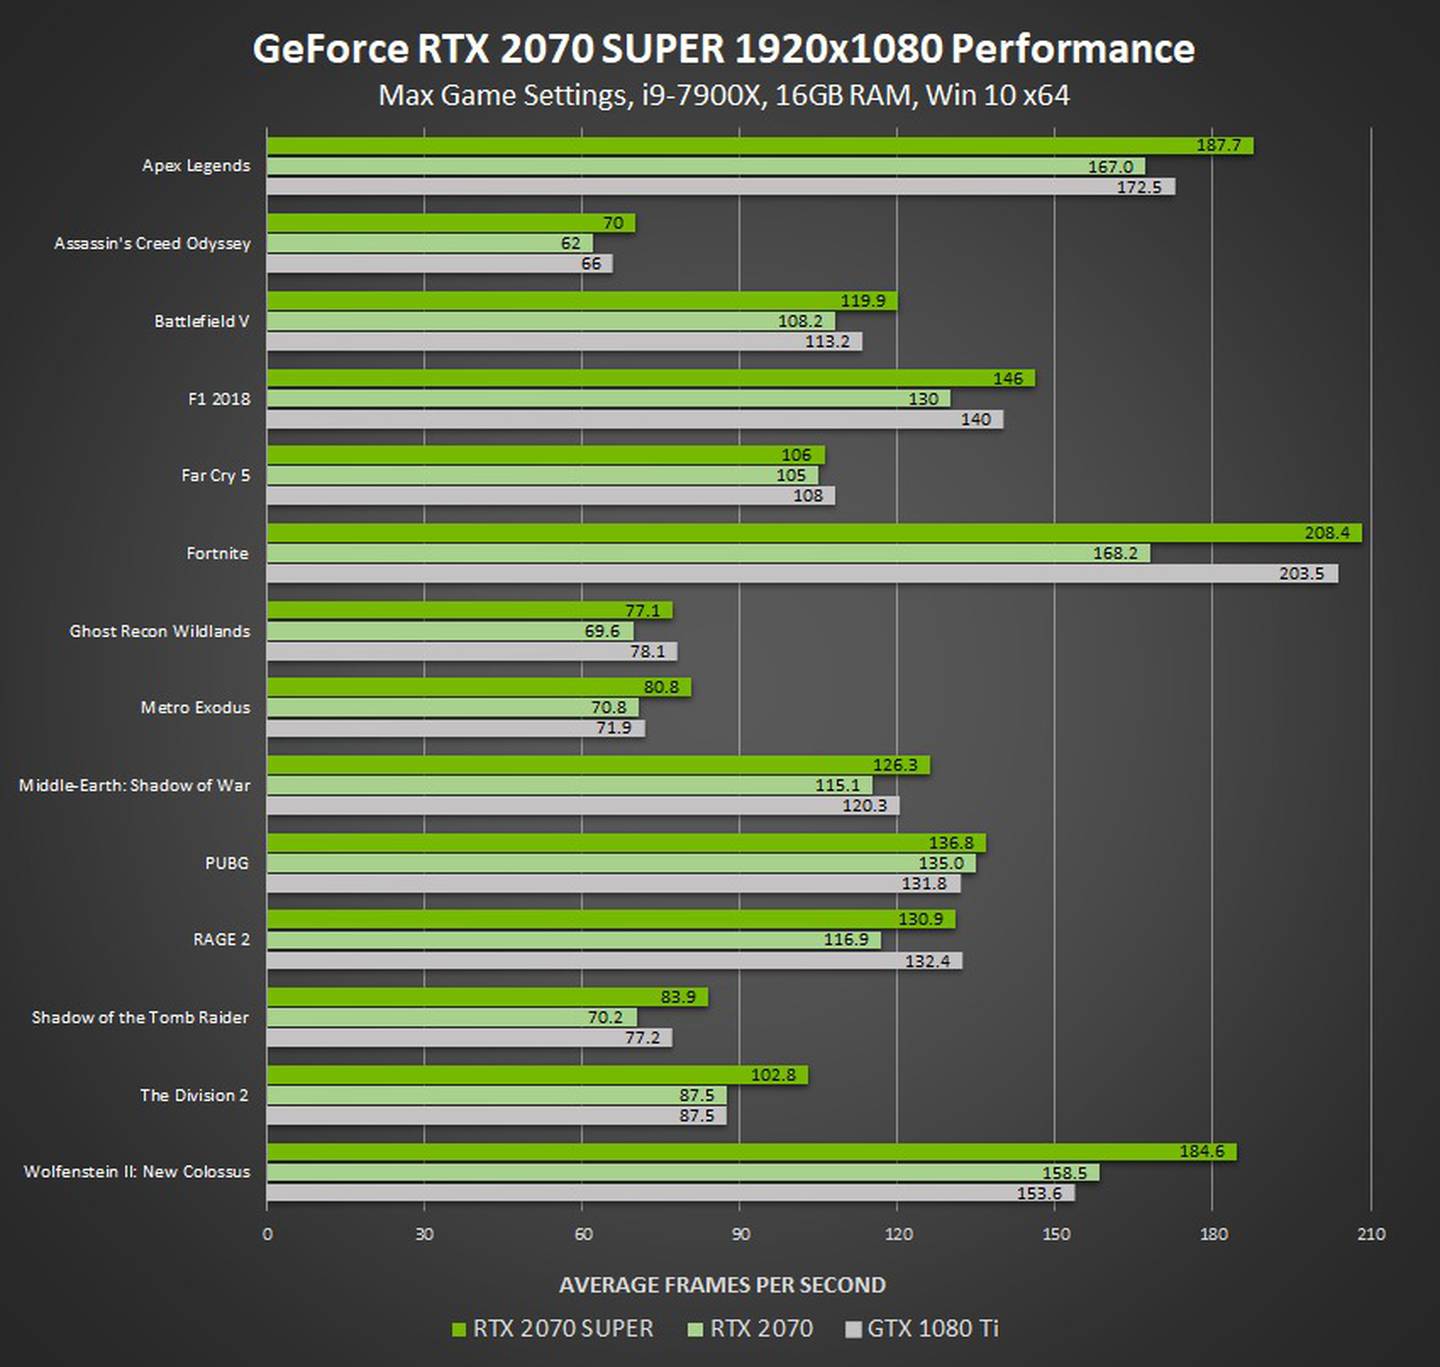 Nvidia geforce gtx сравнение